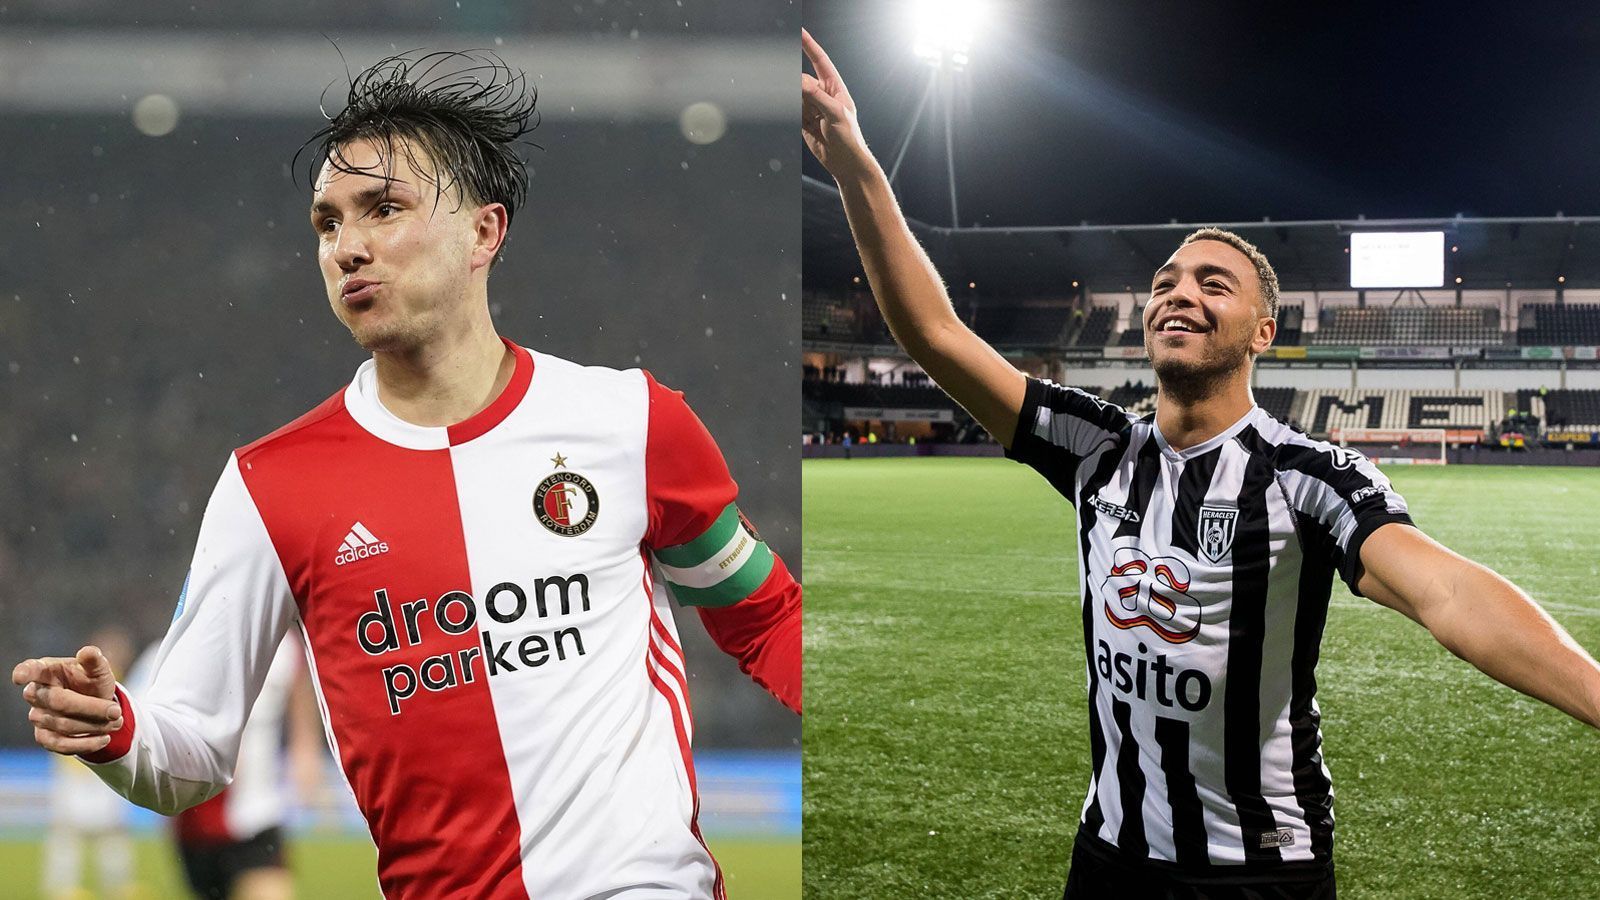 
                <strong>Eredivisie</strong><br>
                Steven Berghuis (Feyenoord Rotterdam, li., erstmals Torschützenkönig) und Cyriel Dessers (Heracles Almelo, re., erstmals Torschützenkönig)Berghuis: 15 Tore in 24 SaisonspielenDessers: 15 Tore in 26 Saisonspielen
              